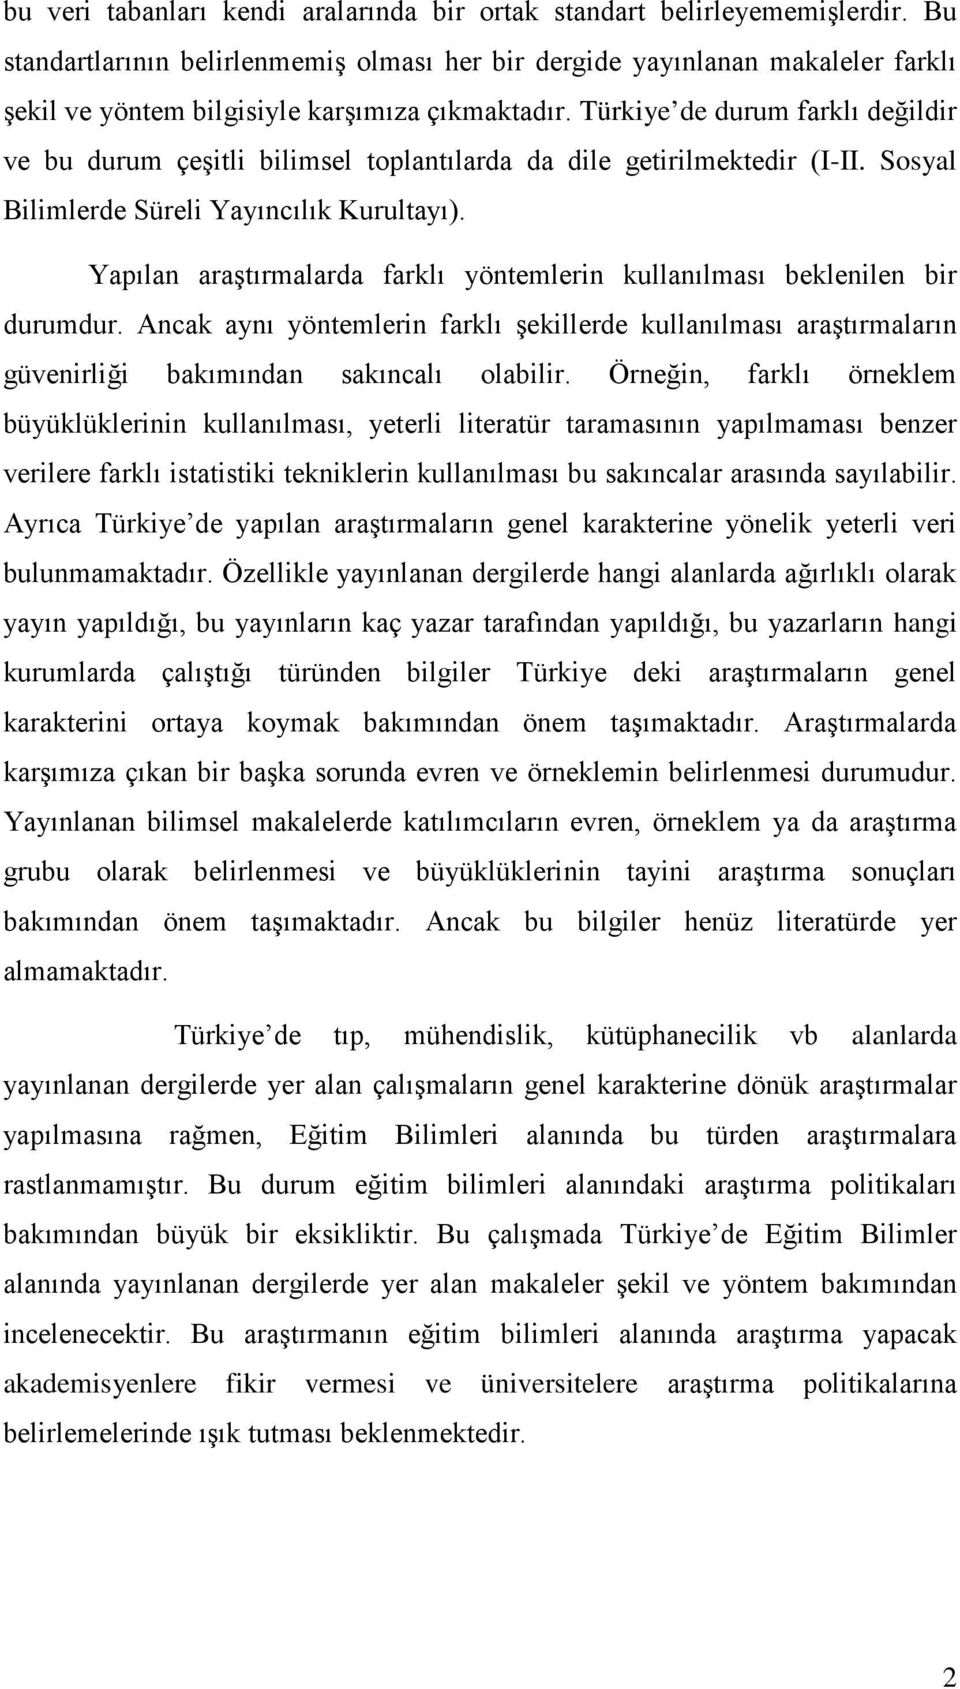 Türkiye de durum farklı değildir ve bu durum çeşitli bilimsel toplantılarda da dile getirilmektedir (I-II. Sosyal Bilimlerde Süreli Yayıncılık Kurultayı).